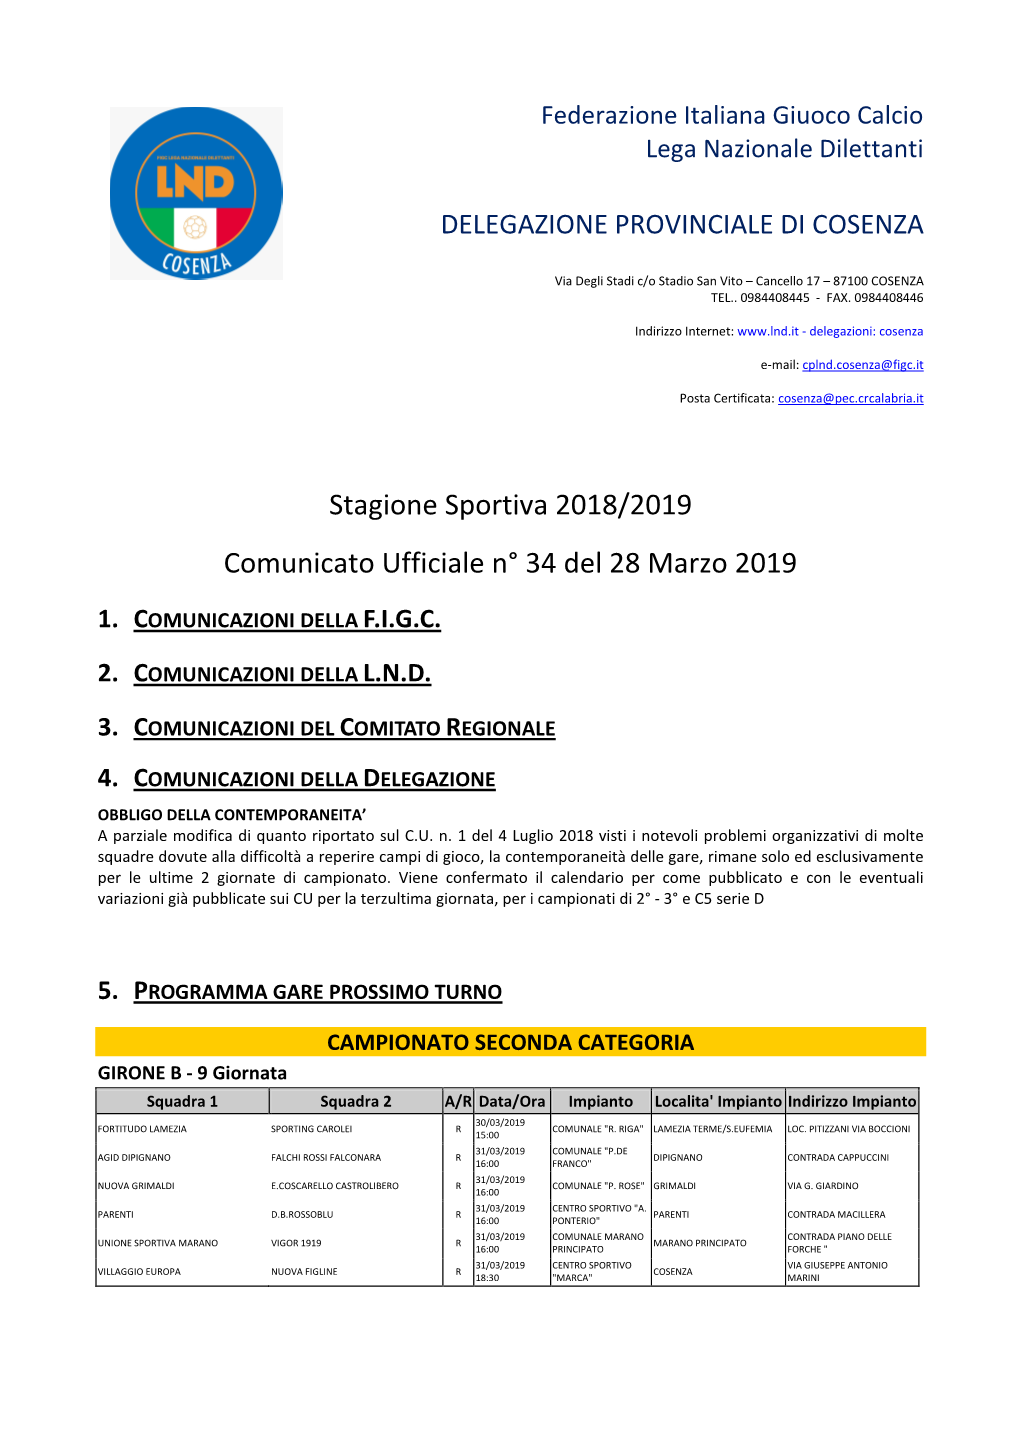 Stagione Sportiva 2018/2019 Comunicato Ufficiale N° 34 Del 28 Marzo 2019